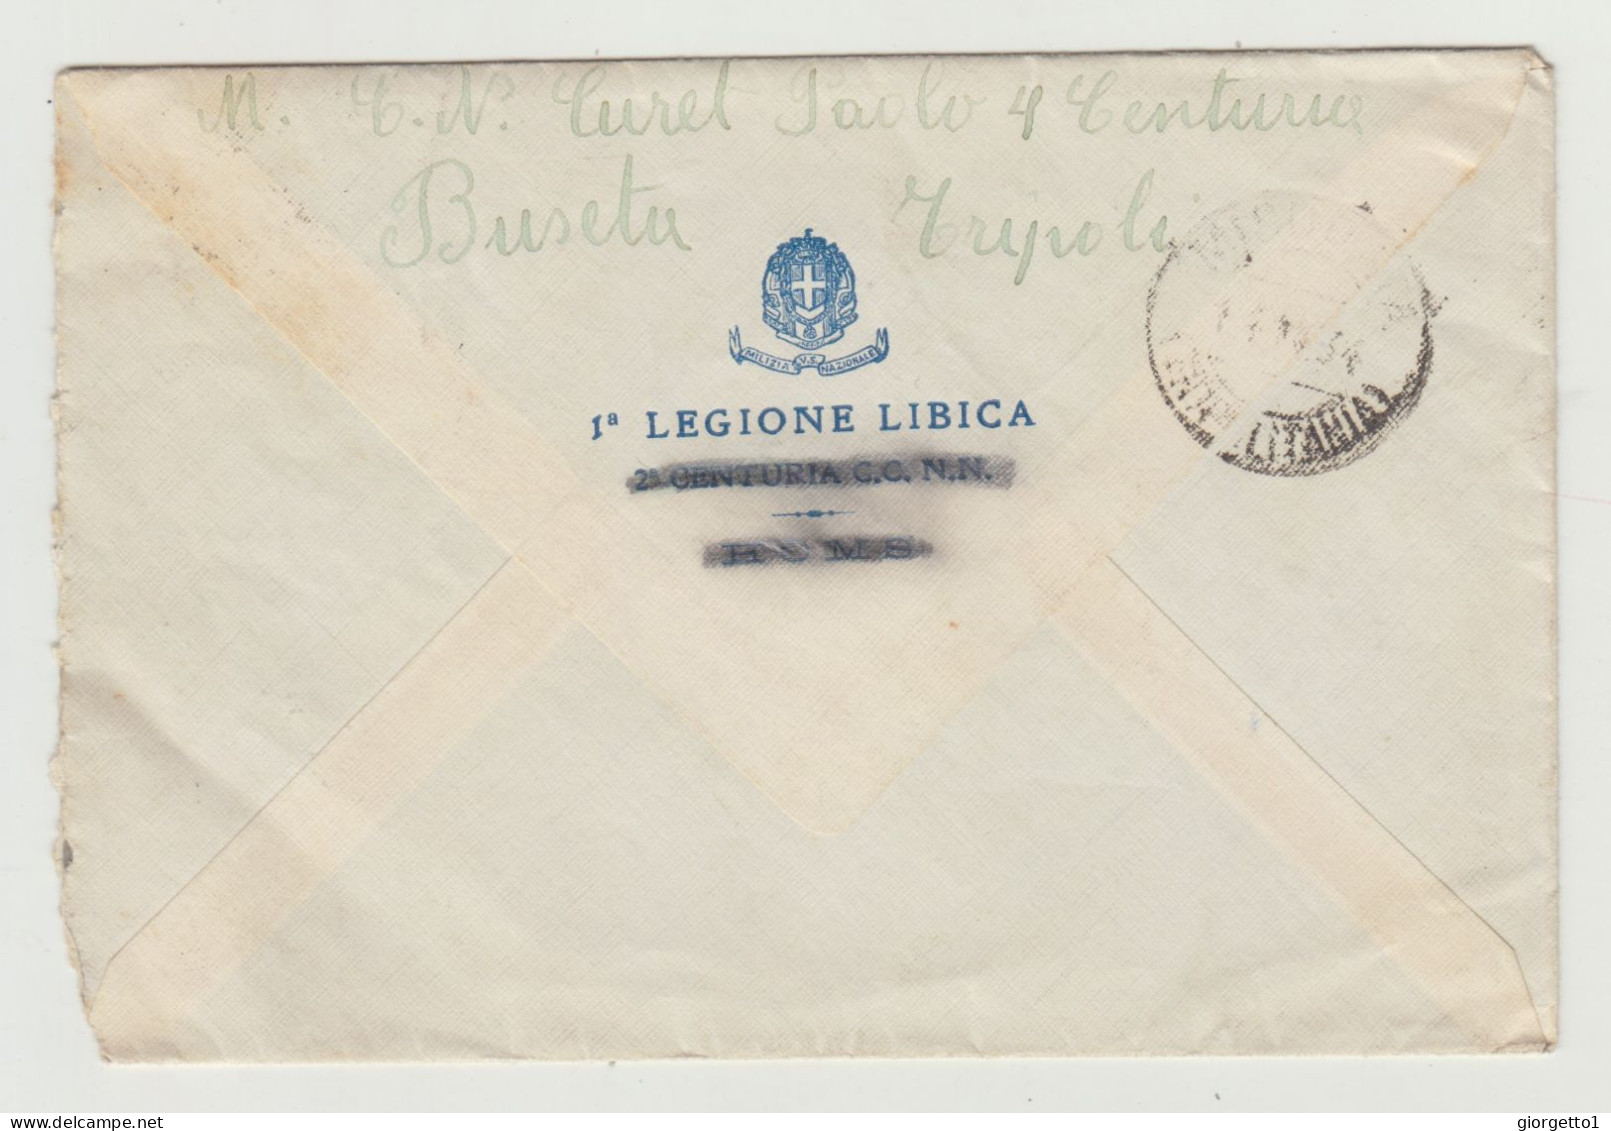 BUSTA SENZA LETTERA - COLONIE ITALIANE - LIBIA DEL 1934 - 1 LEGIONE LIBICA WW2 - Marcophilie (Avions)